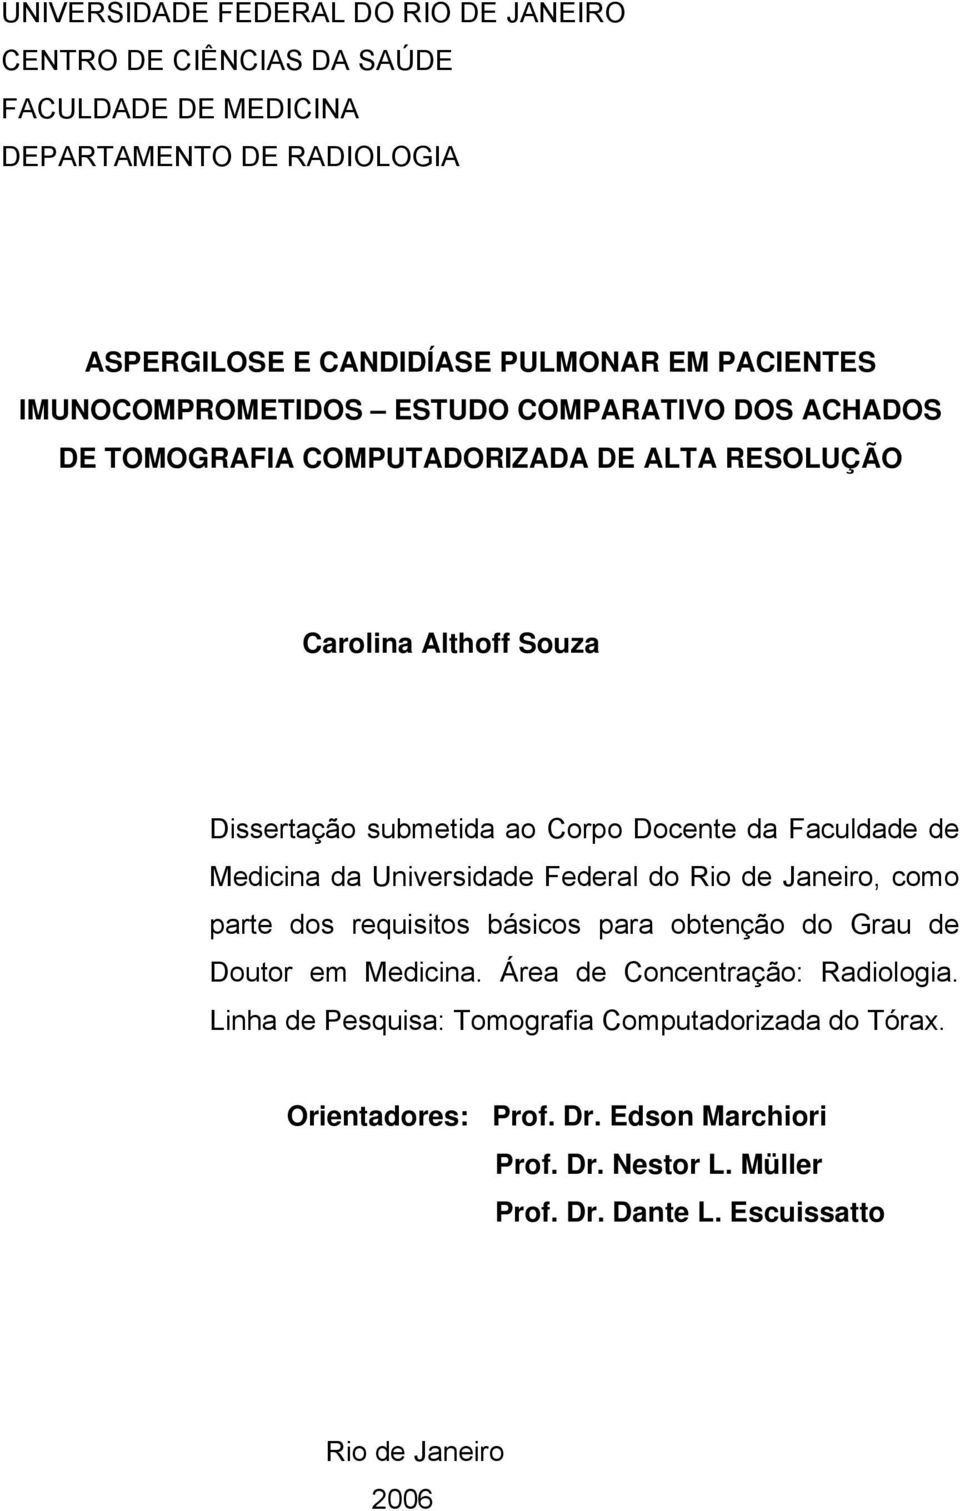 Faculdade de Medicina da Universidade Federal do Rio de Janeiro, como parte dos requisitos básicos para obtenção do Grau de Doutor em Medicina.